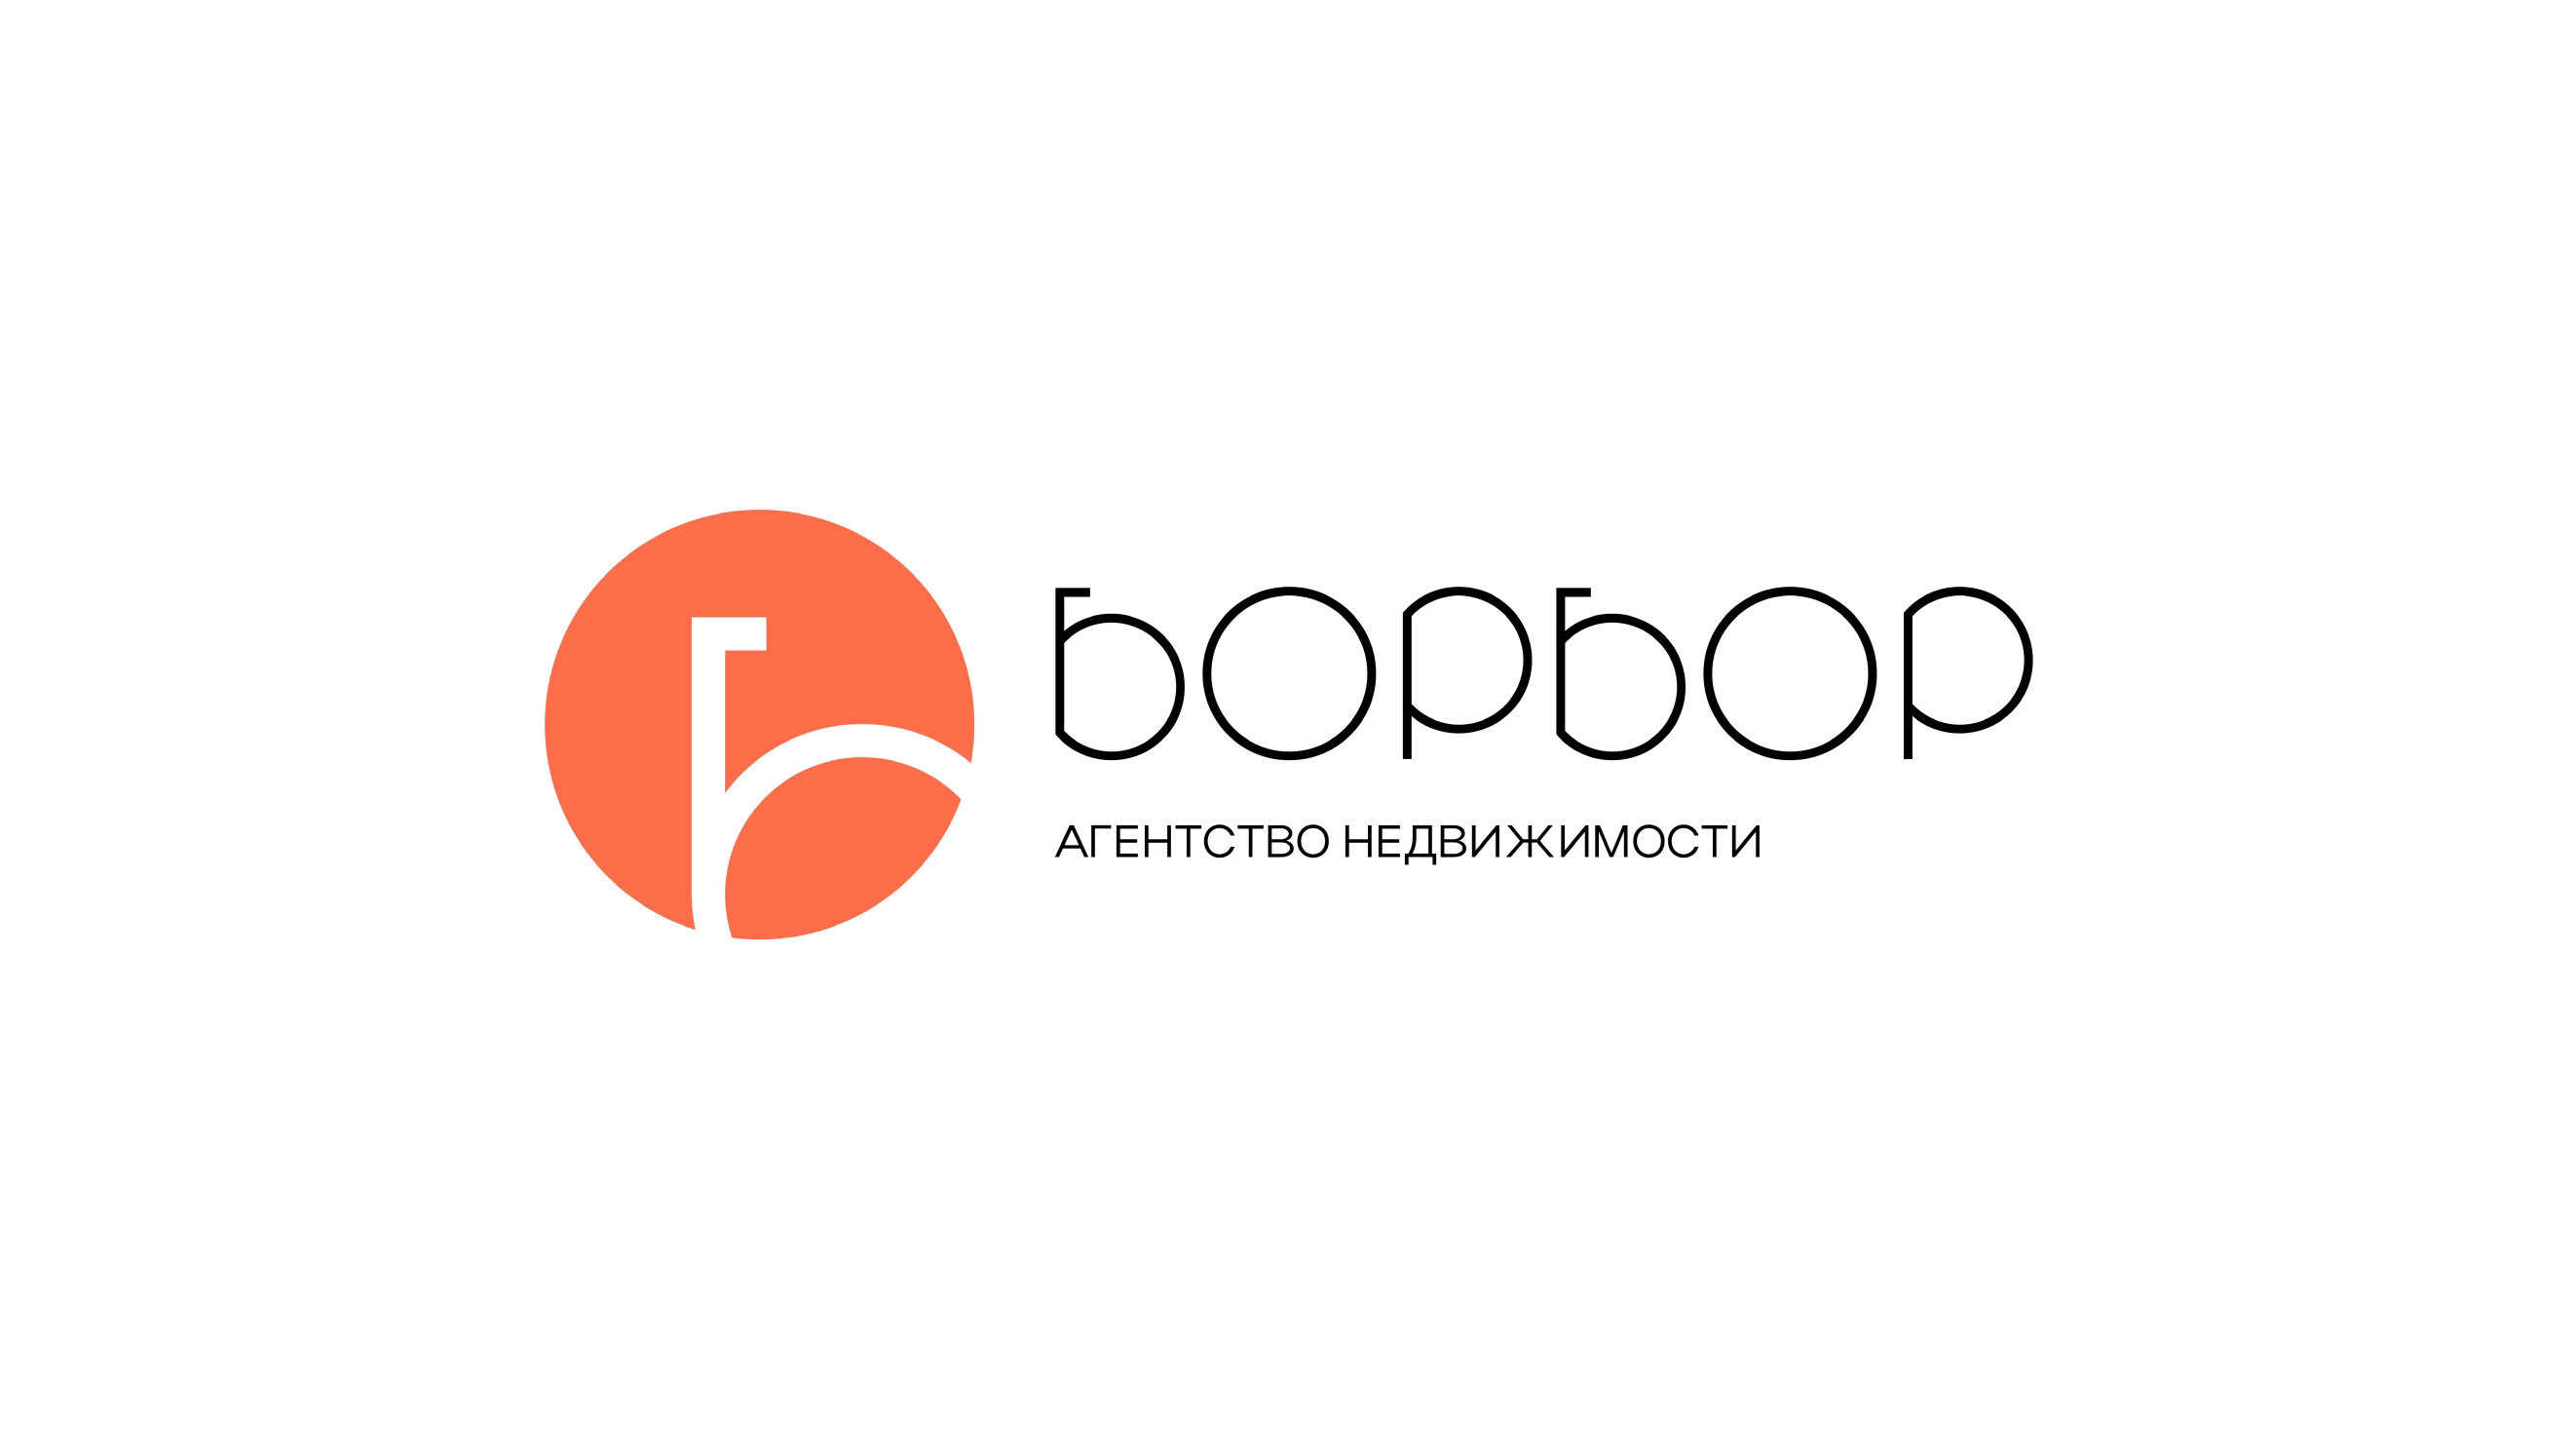 Агентство "Борбор Недвижимость" - Бизнес-профиль компании на lalafo.kg | Кыргызстан